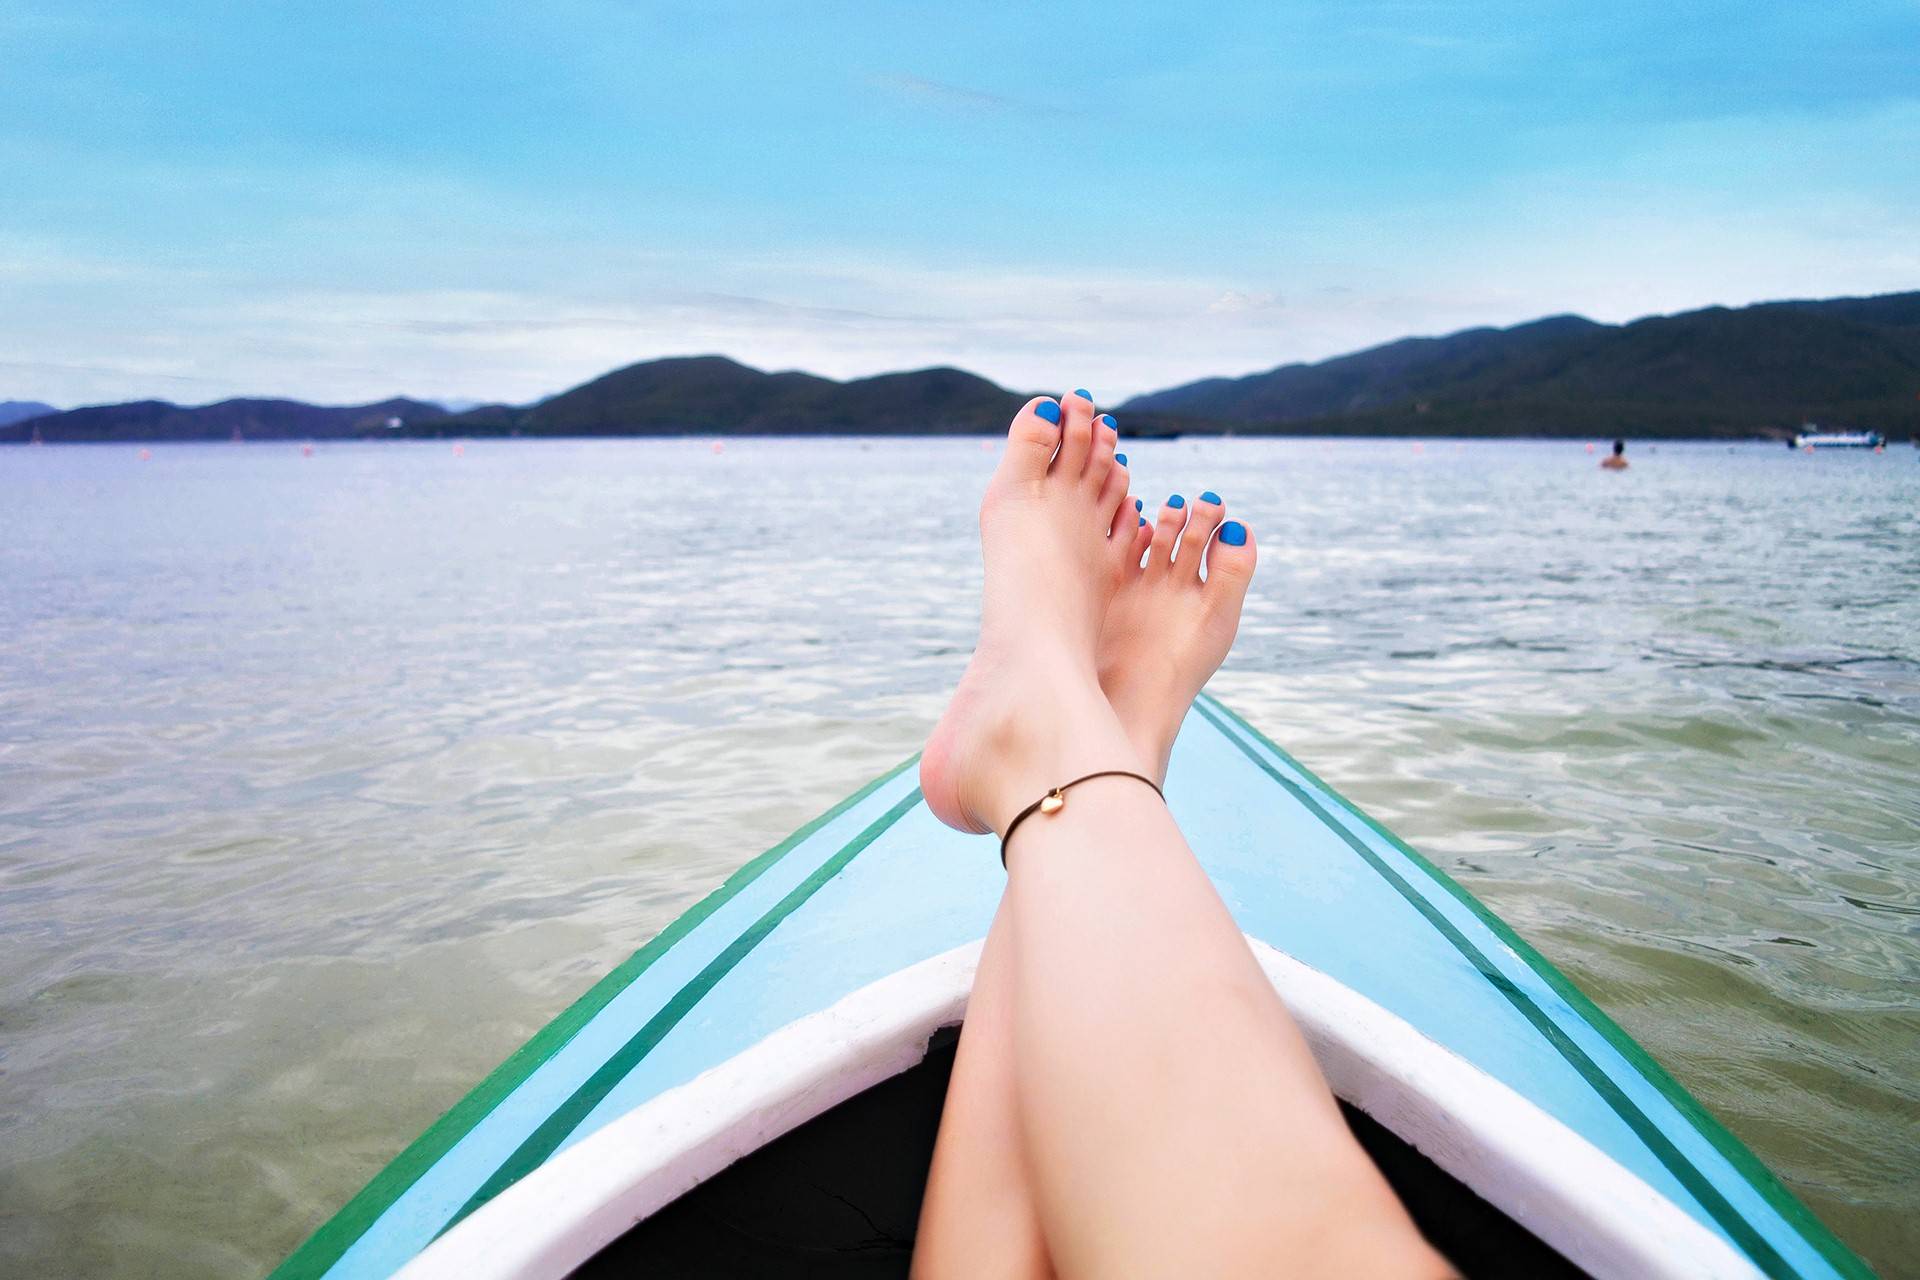 Tạo dáng chụp chân khoe chân dài trên thuyền đi biển